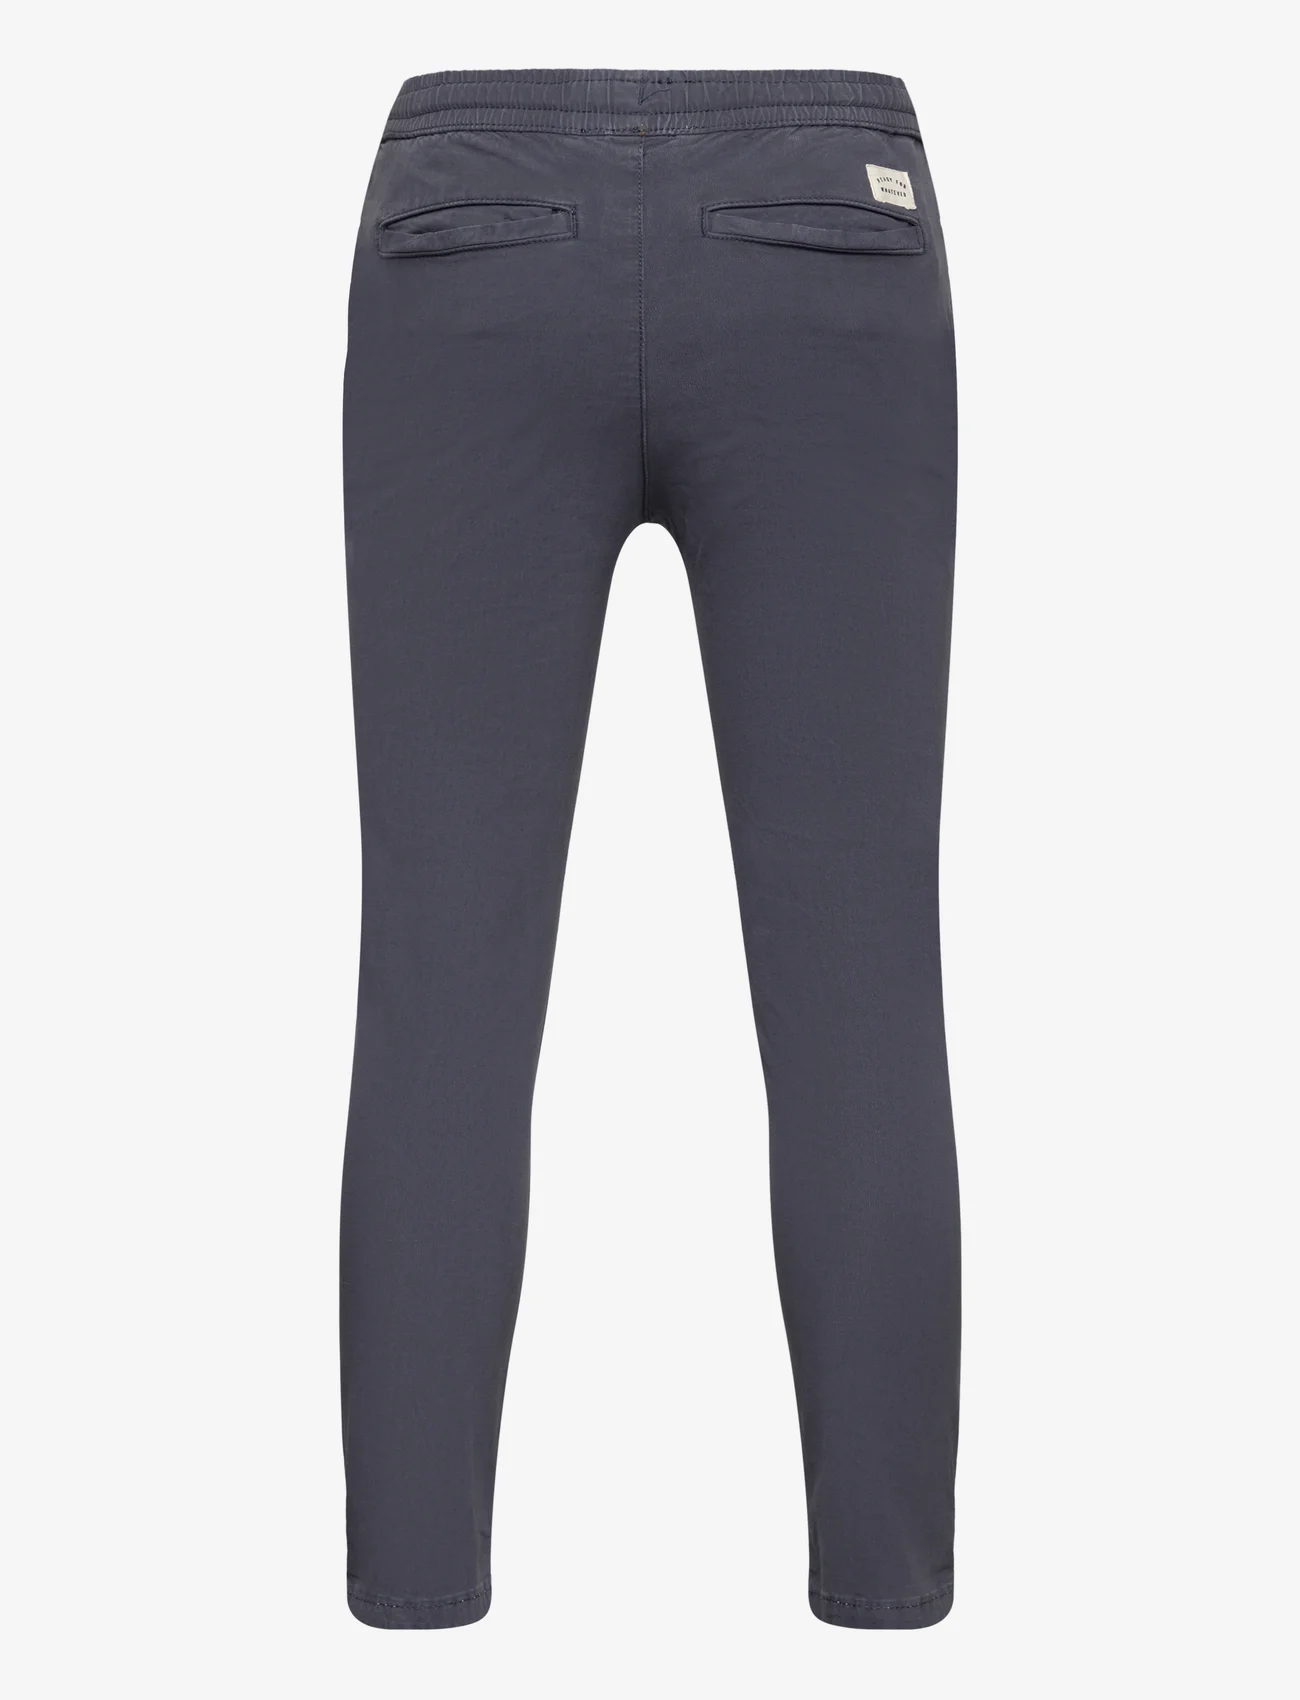 Mango - Cotton jogger-style trousers - lägsta priserna - navy - 1